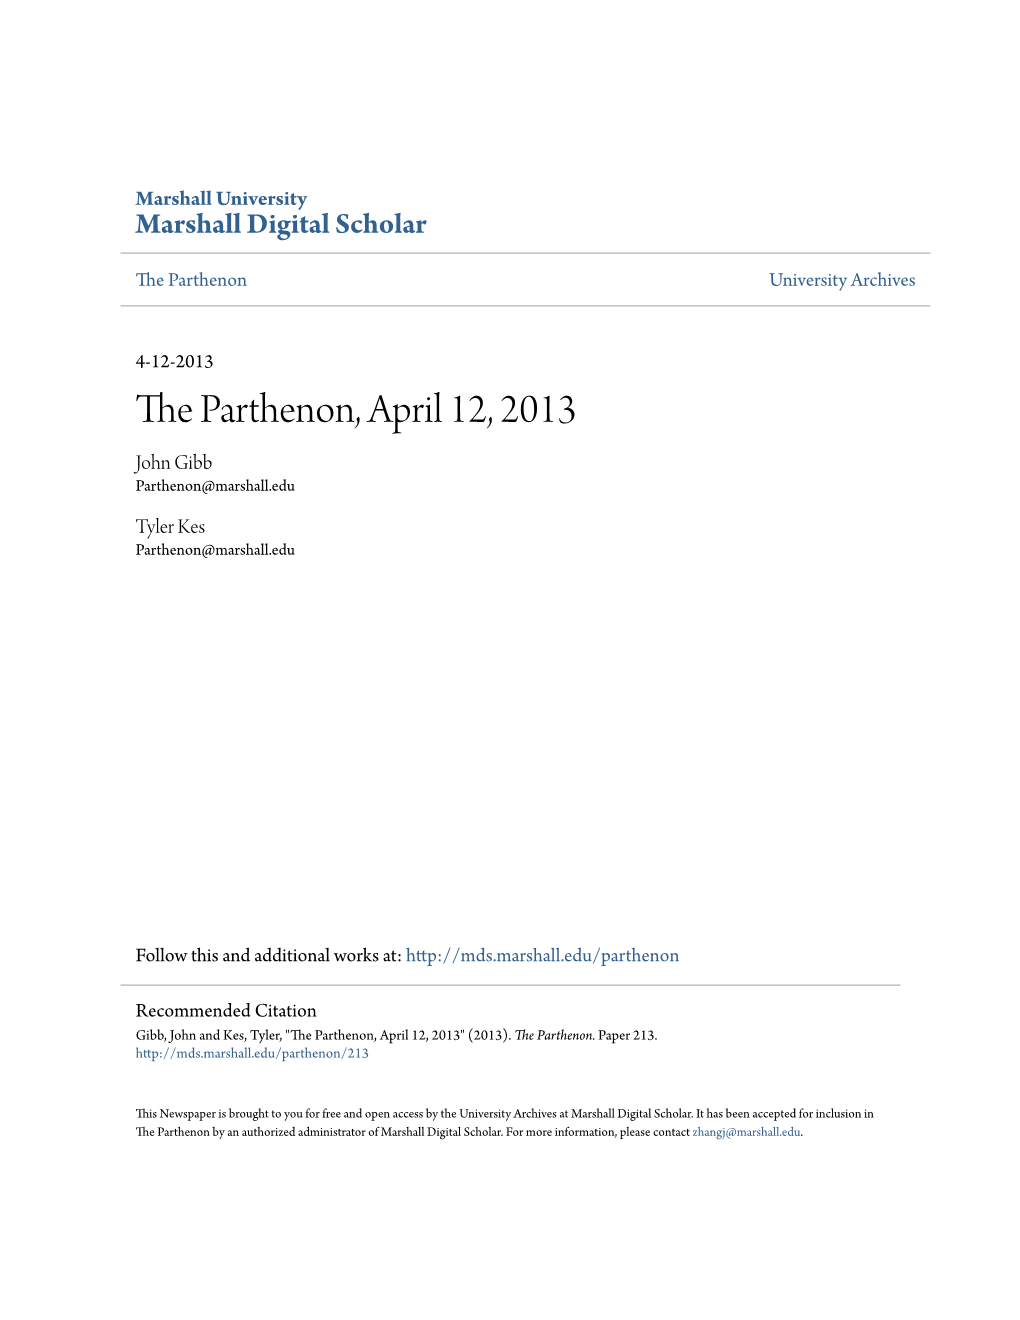 The Parthenon, April 12, 2013